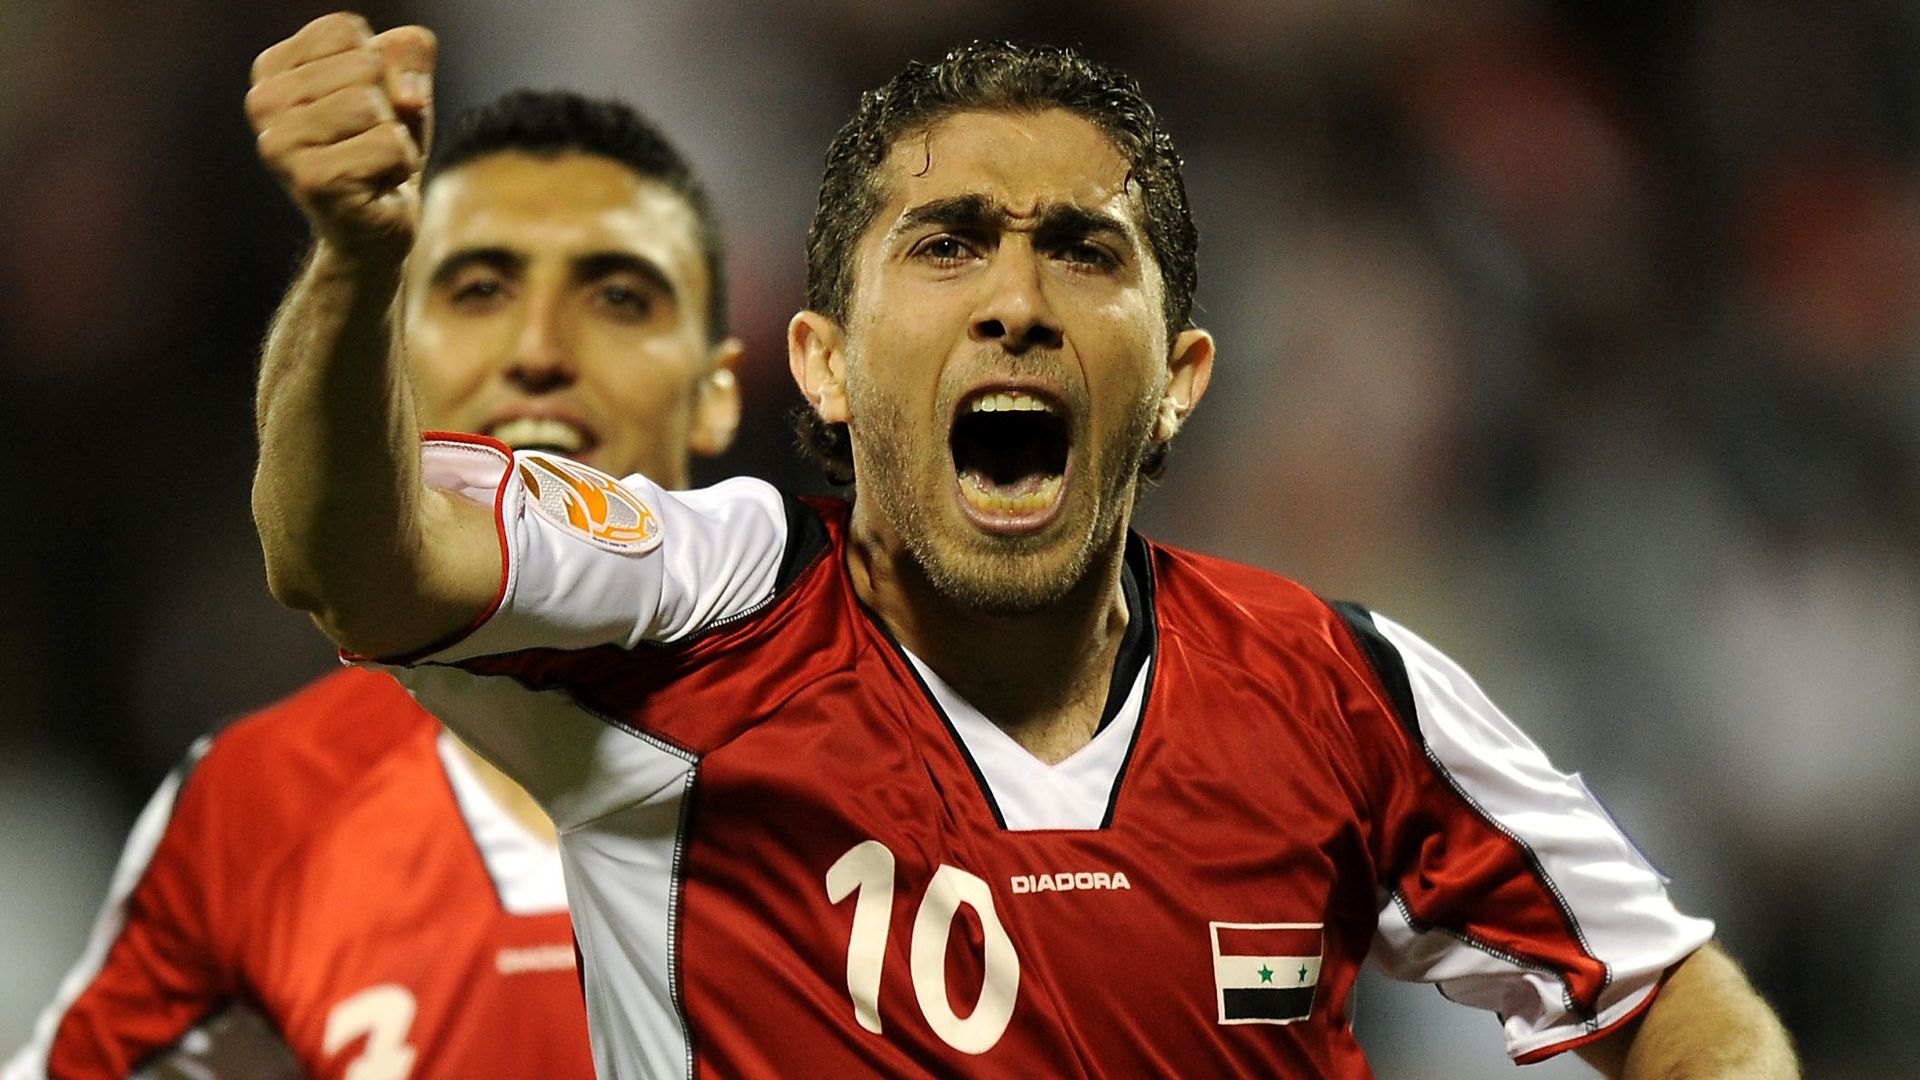 Un footballeur ayant rallié l'opposition en syrie de retour en sélection